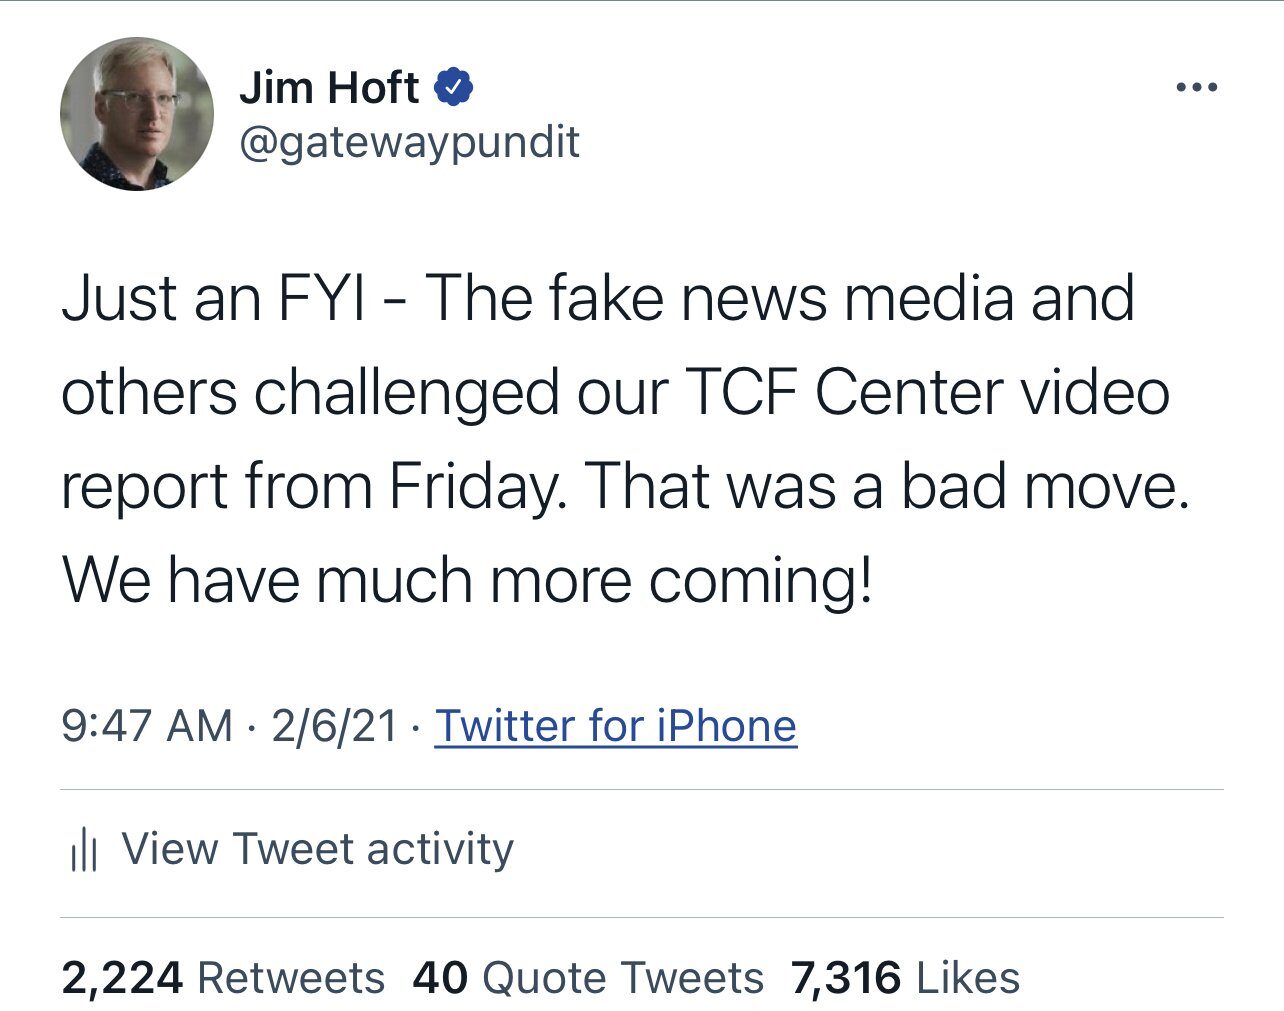 Jim Hoft tweet